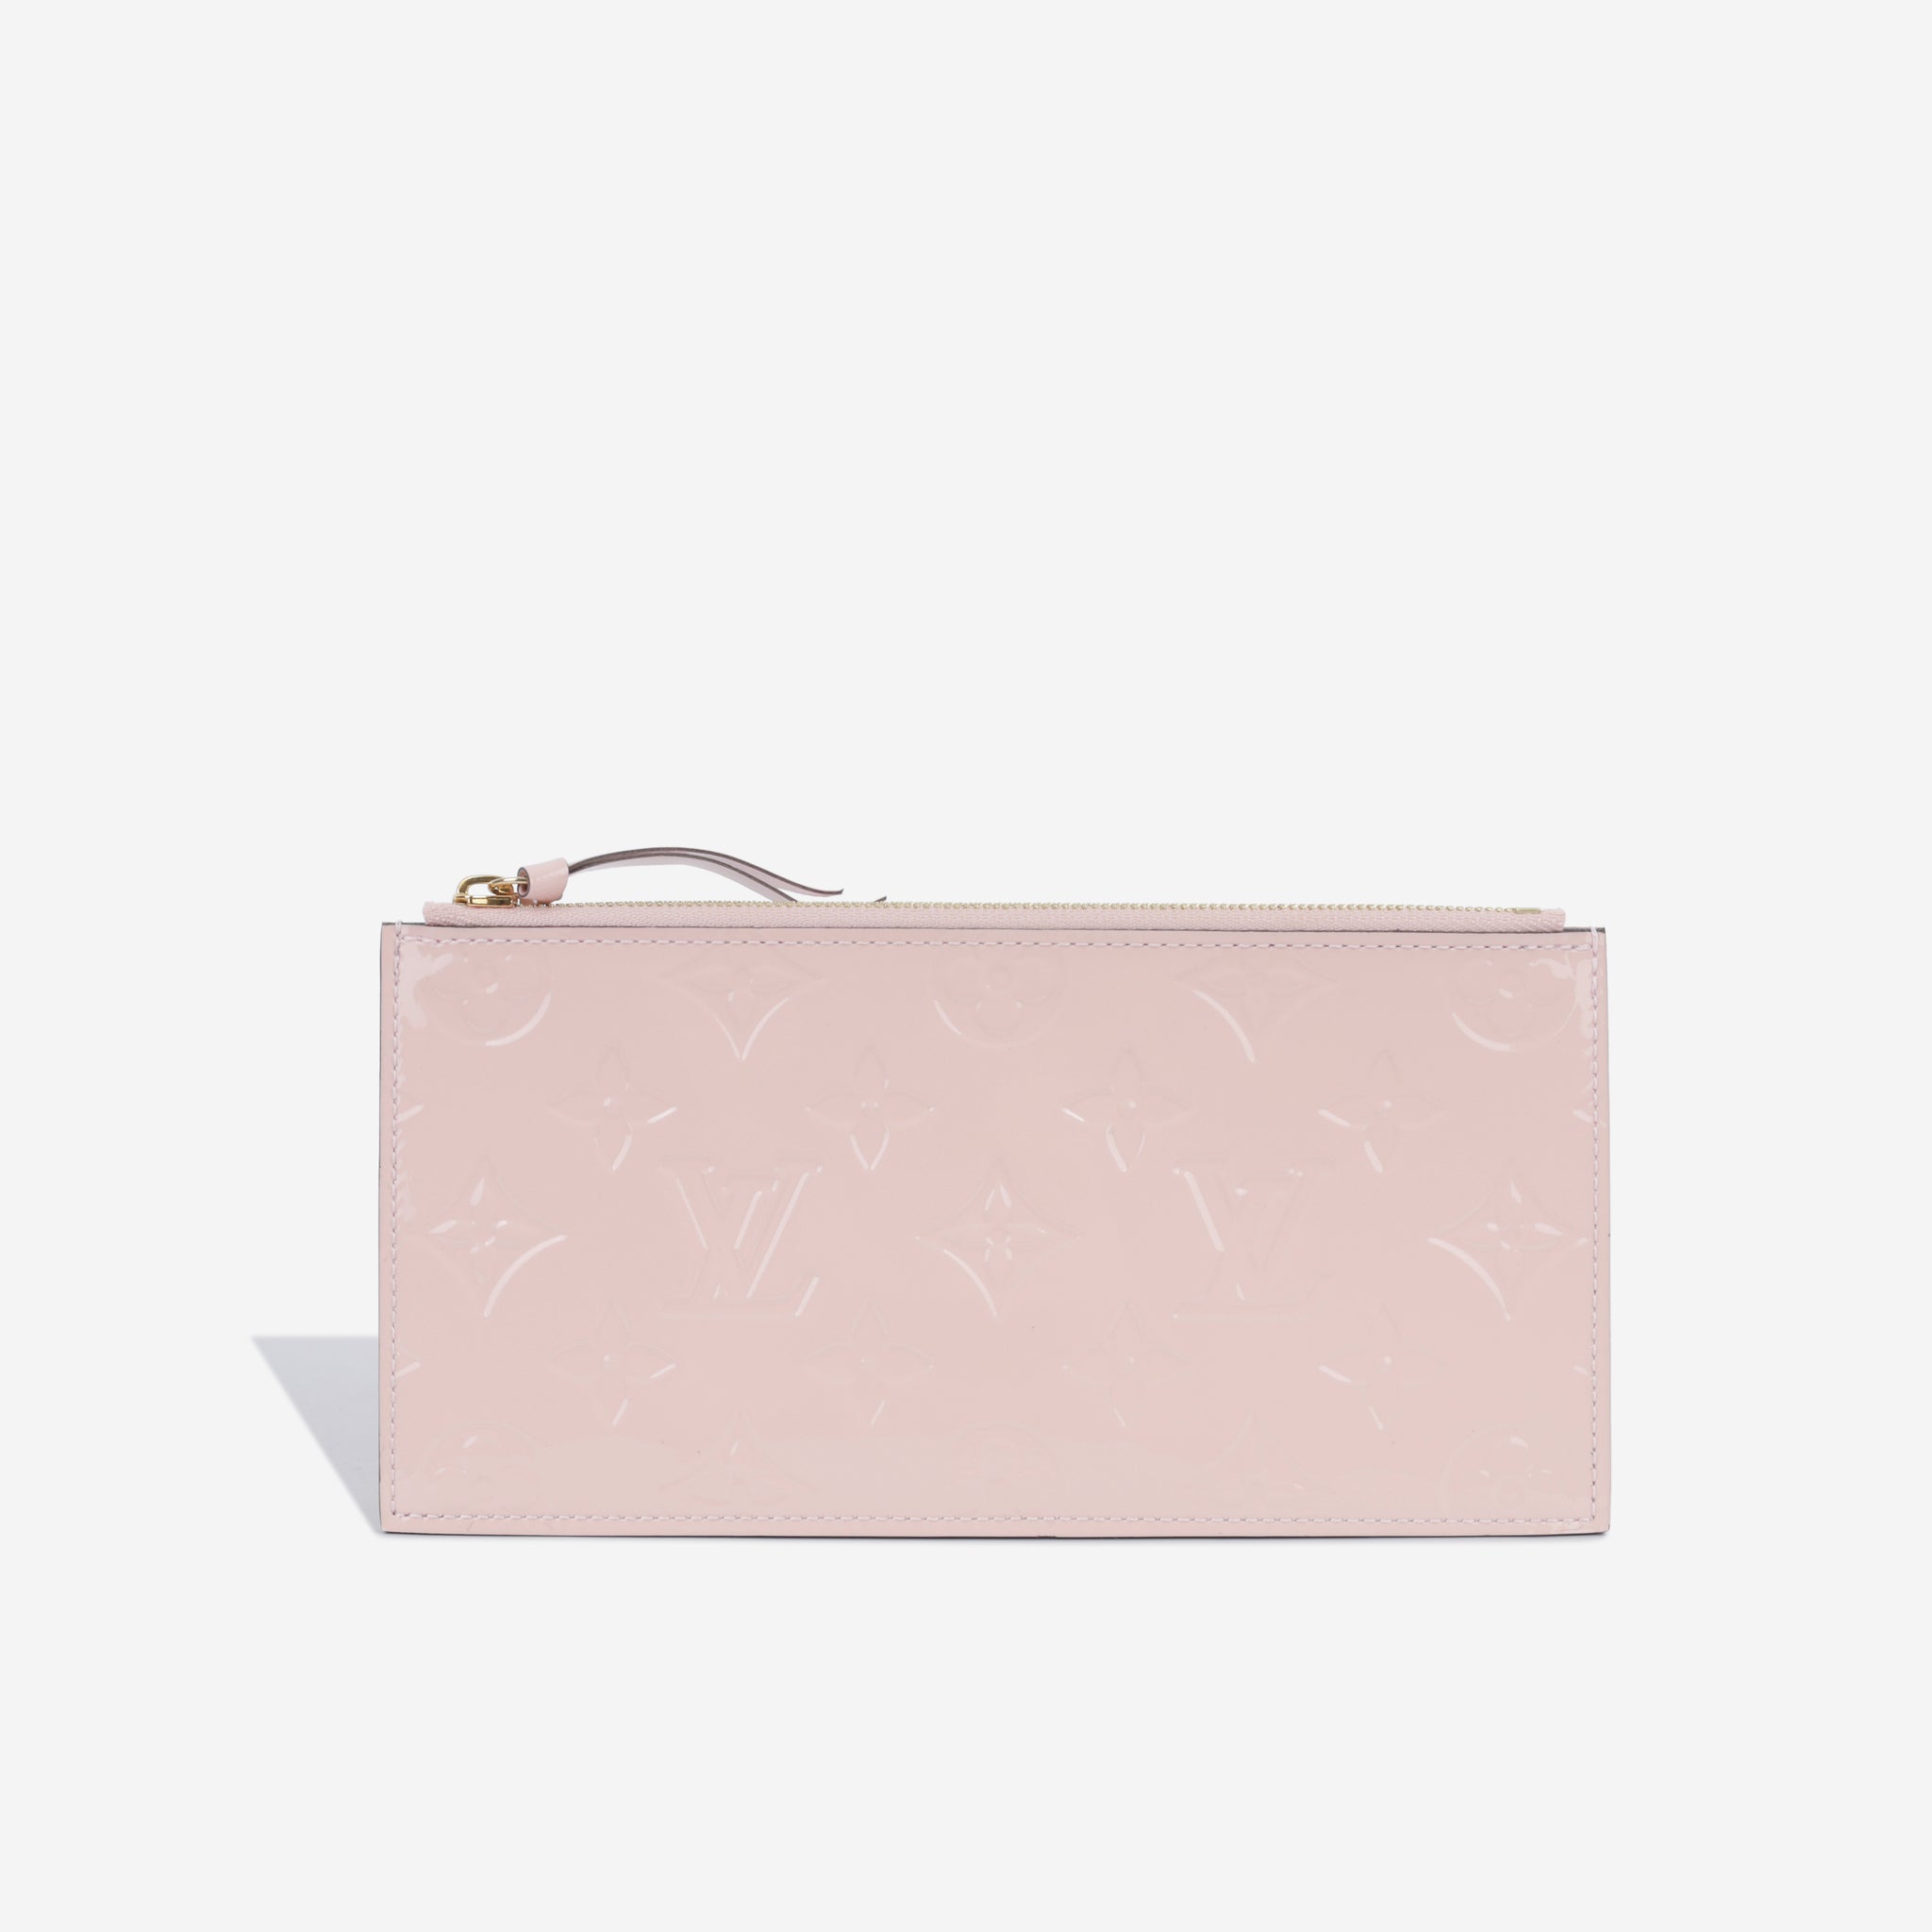 Louis Vuitton - Pochette Félicie - Pink Vernis Empreinte Leather - GHW